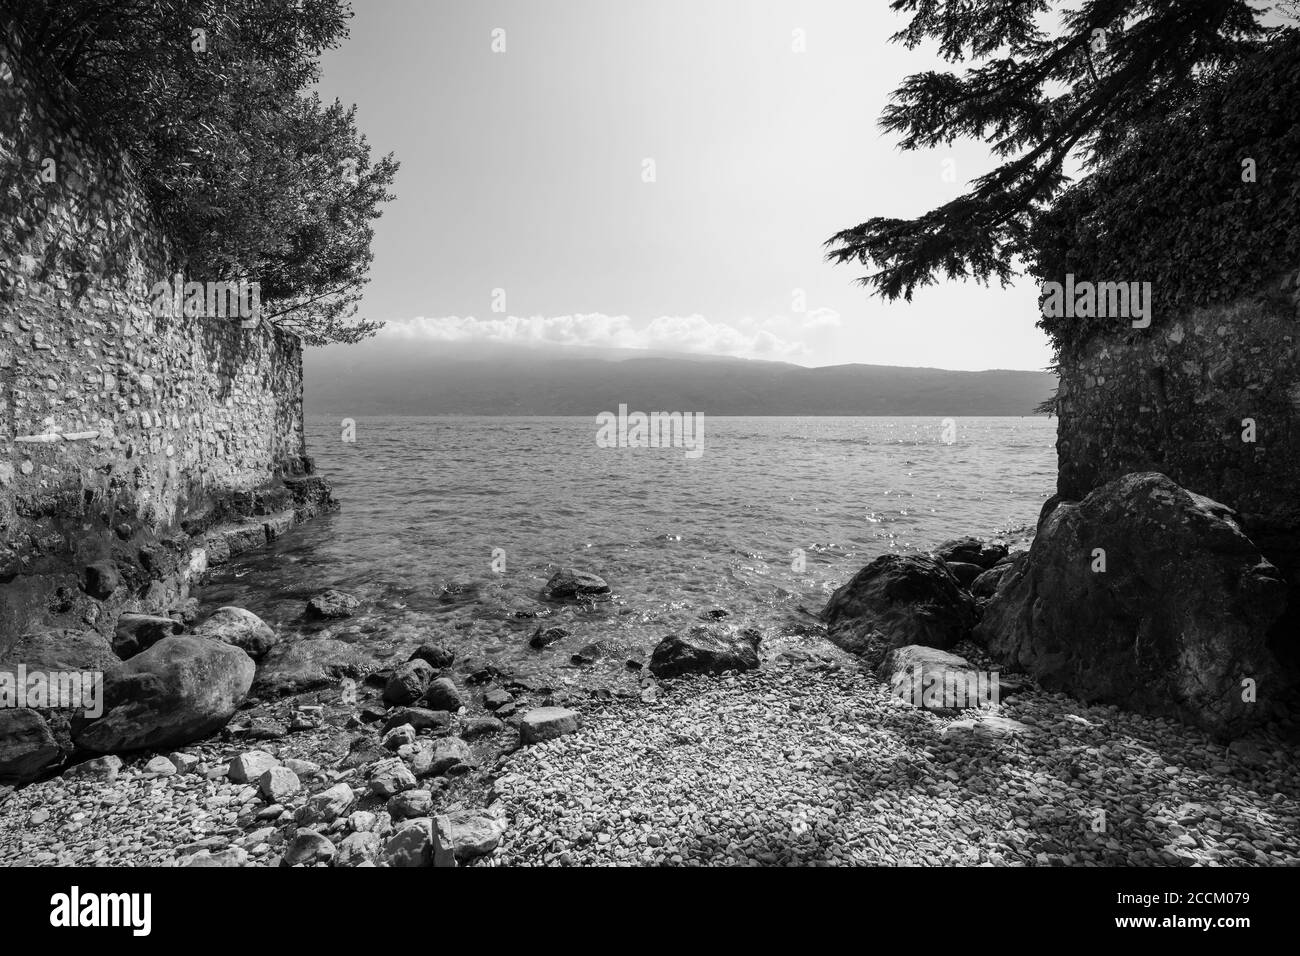 Petite plage sur le lac de Garde à Gargnano, Brescia, Italie, vue panoramique de la rive ouest vers le côté Vérone, photo noir et blanc Banque D'Images